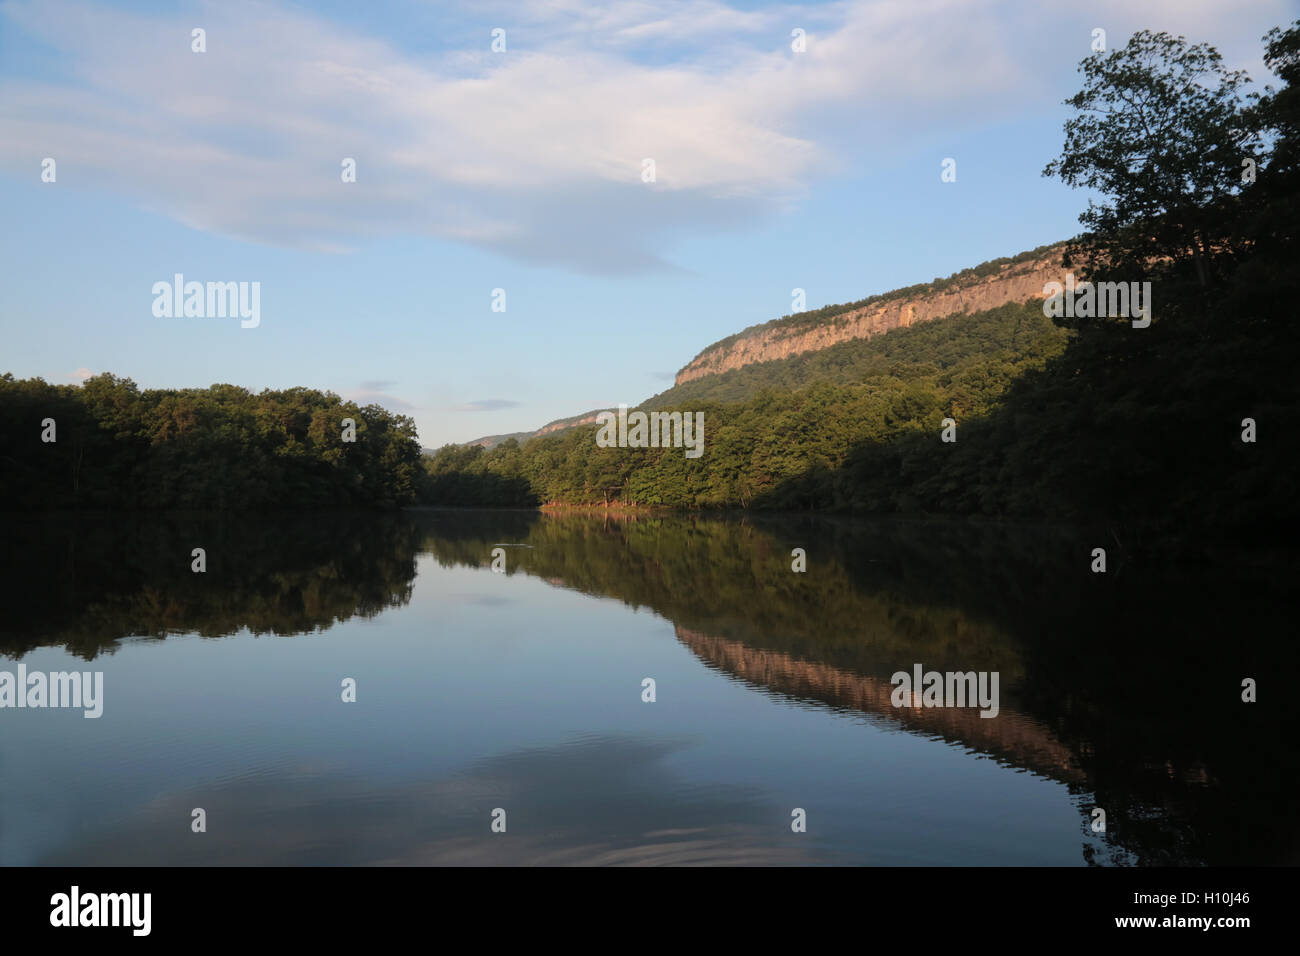 Mattina la riflessione sul lago, New Paltz, NY, STATI UNITI D'AMERICA Foto Stock